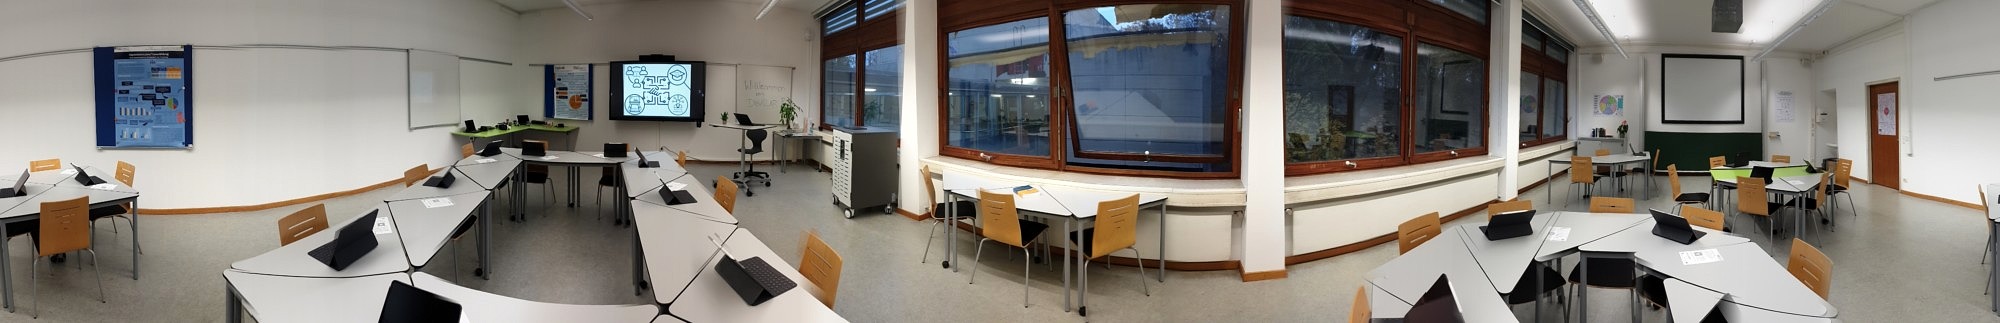 DigiLLab Raum mit Sitzplätzen und Tischen in verschiedenen Formationen mit iPads darauf und ein Bildschirm an der linken Wand